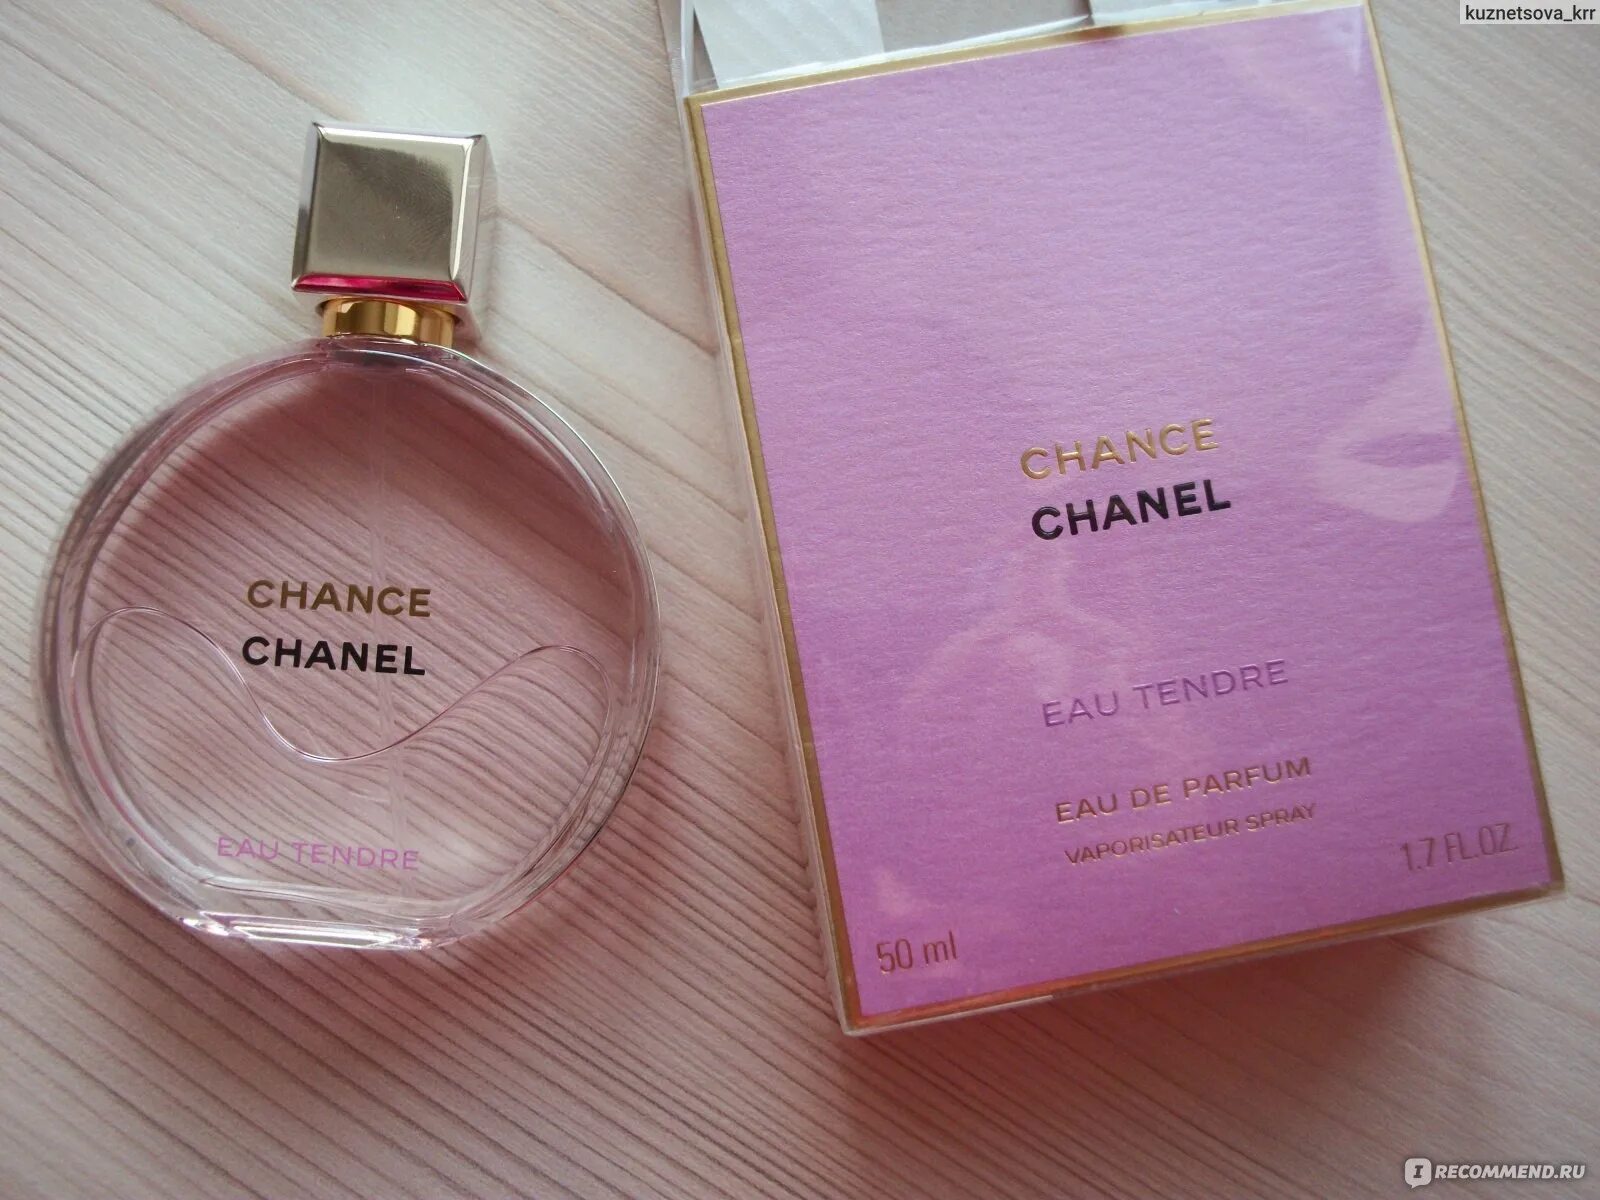 Летуаль туалетная вода шанель. Парфюм Chanel chance (Шанель шанс). Chanel chance tender Parfum 50 мл. Шанель шанс Роуз. Шанель шанс духи летуаль.